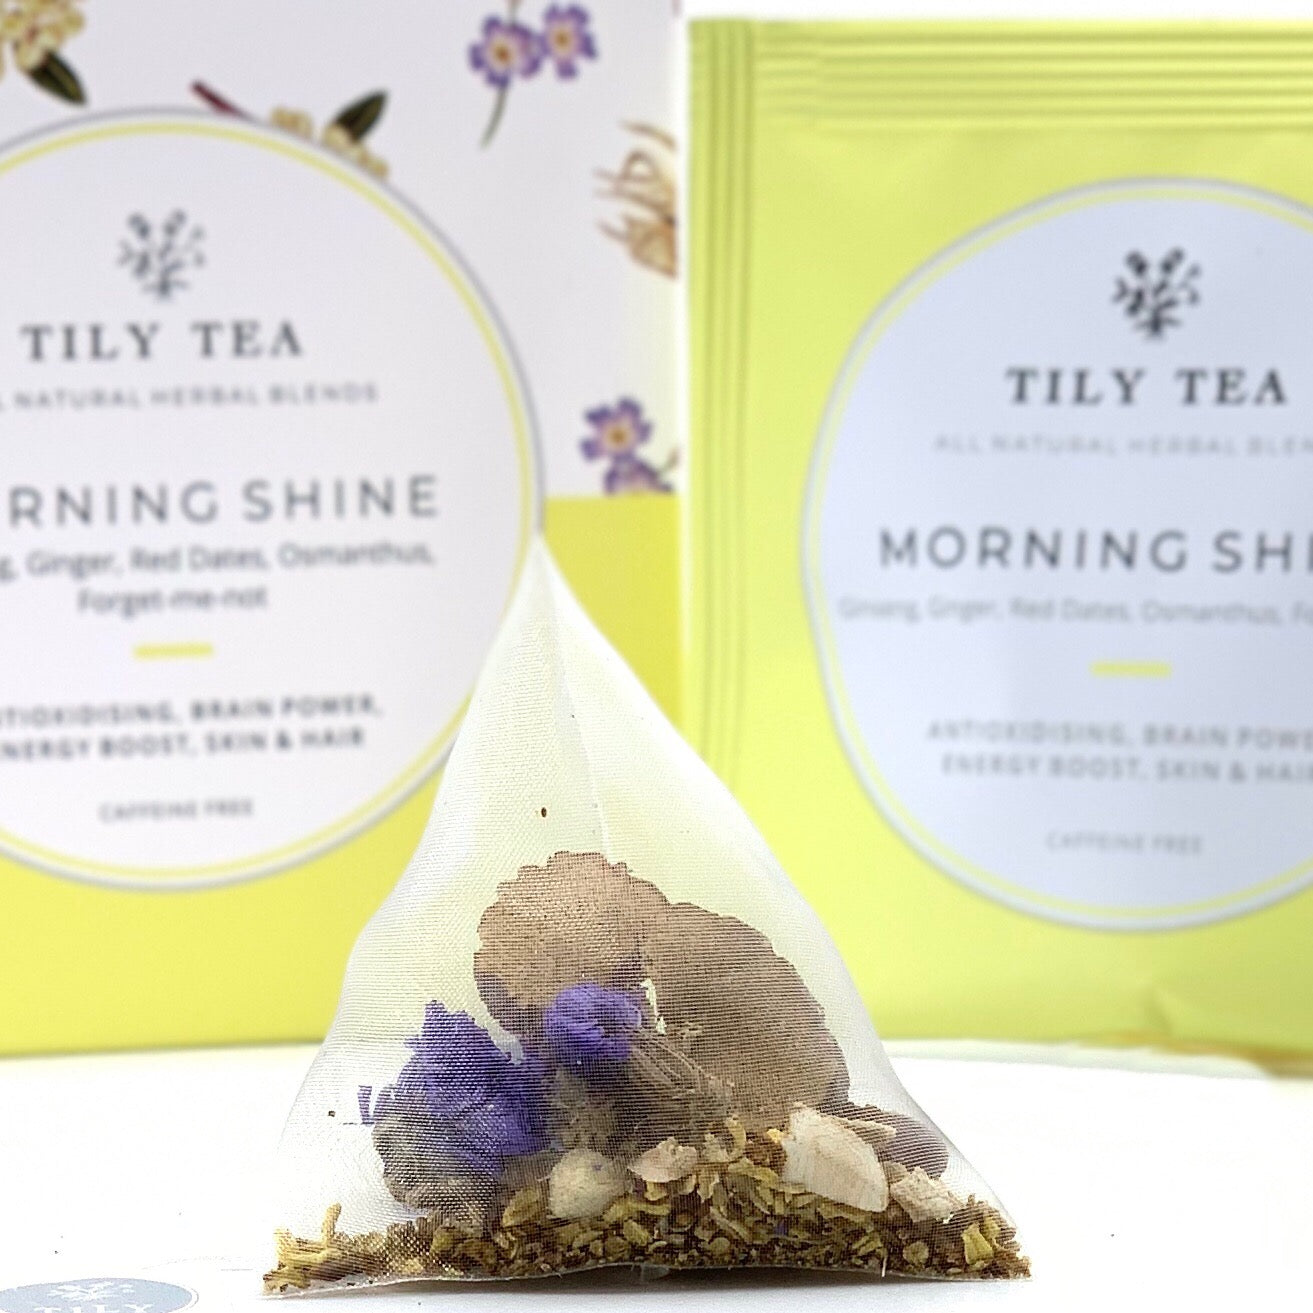 Morning Shine - Tily Tea